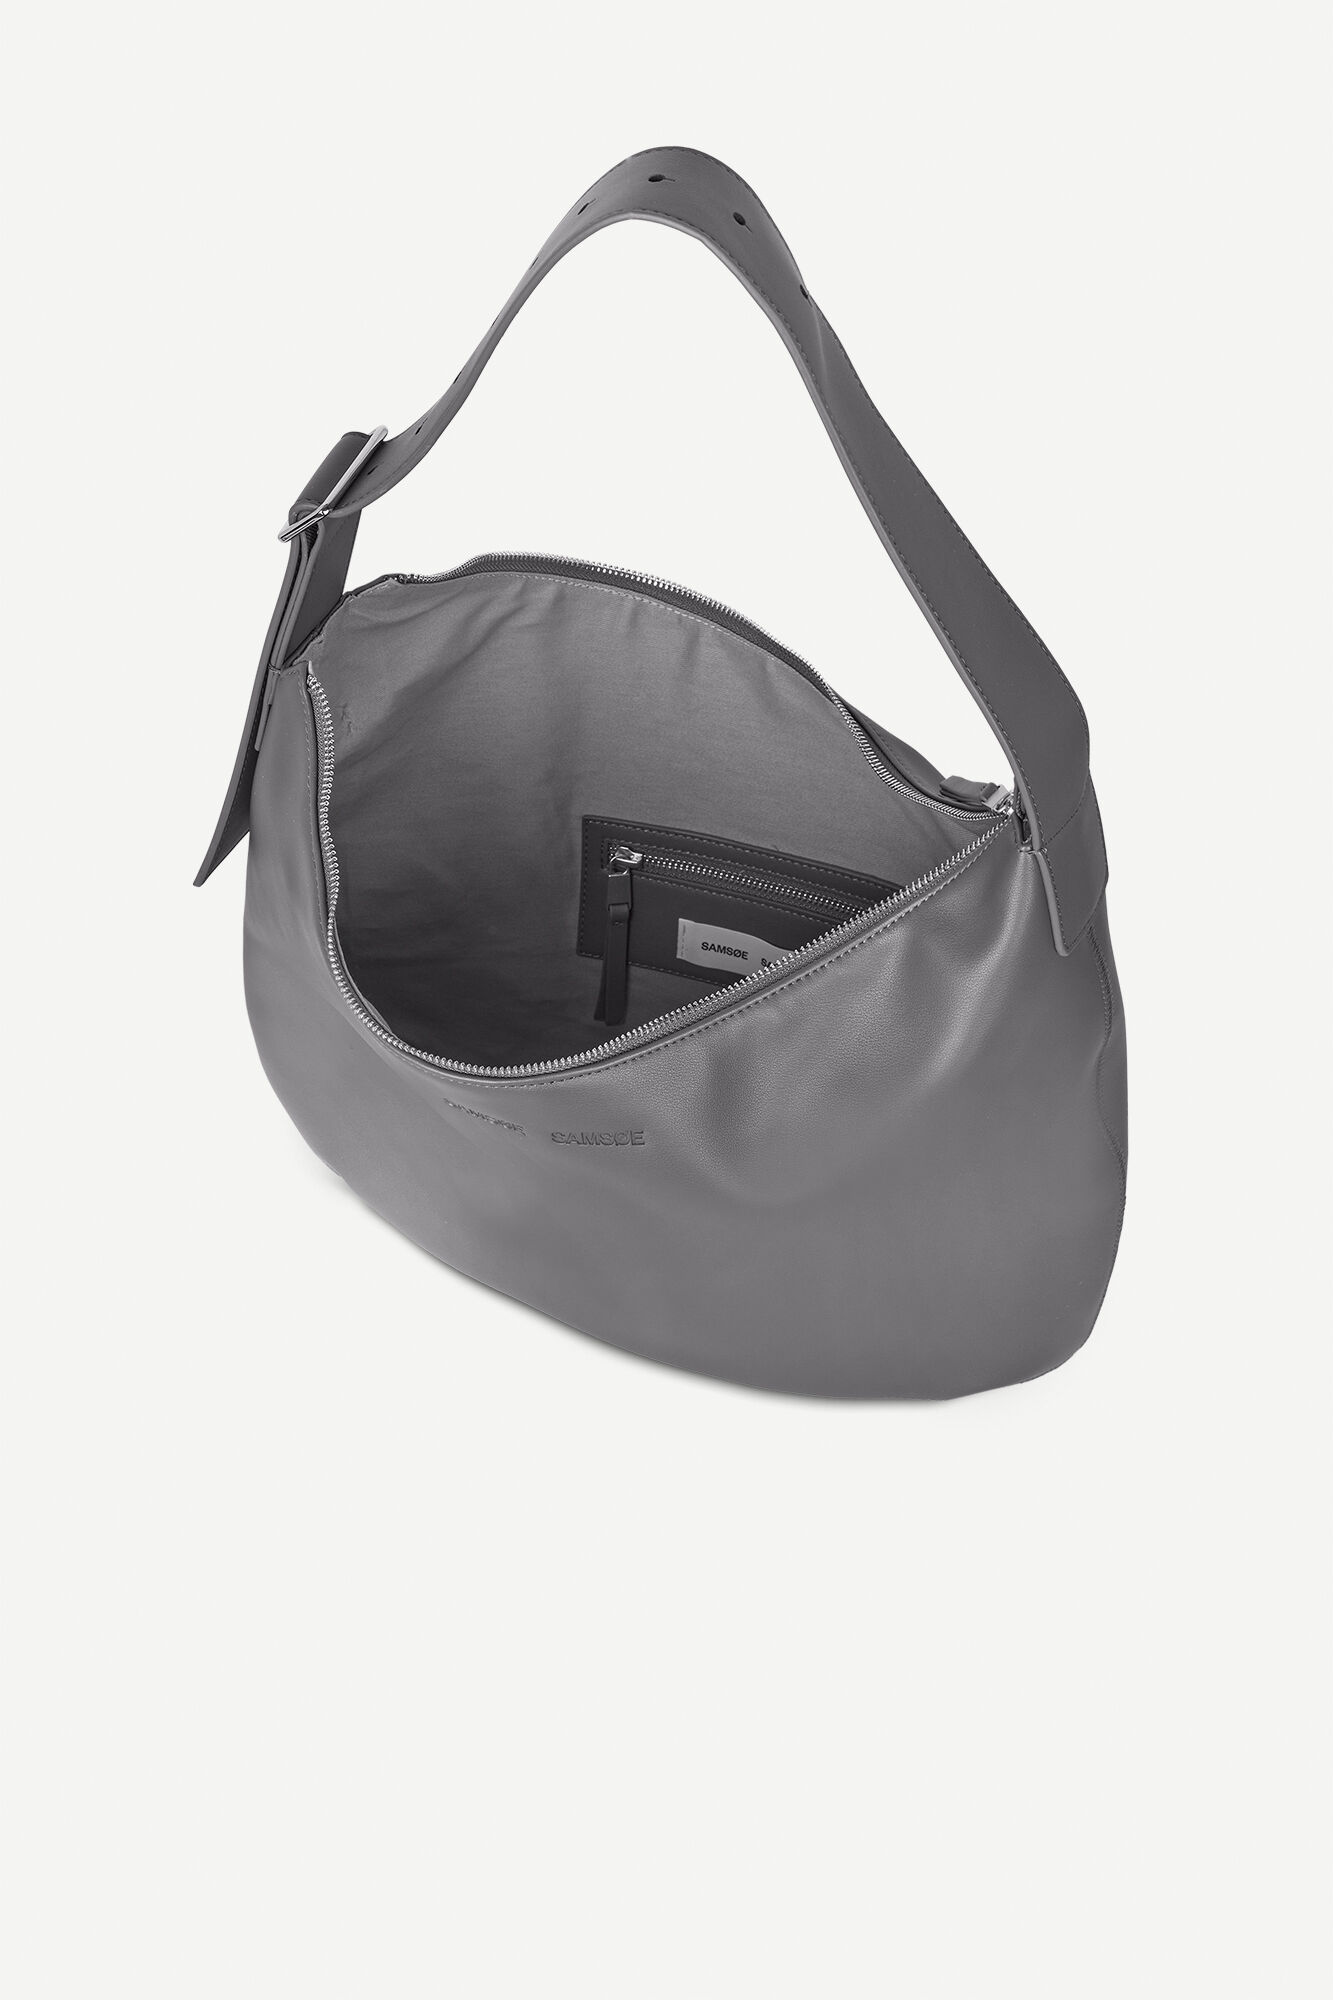 Any bags similar to this Freja Roma? : r/handbags